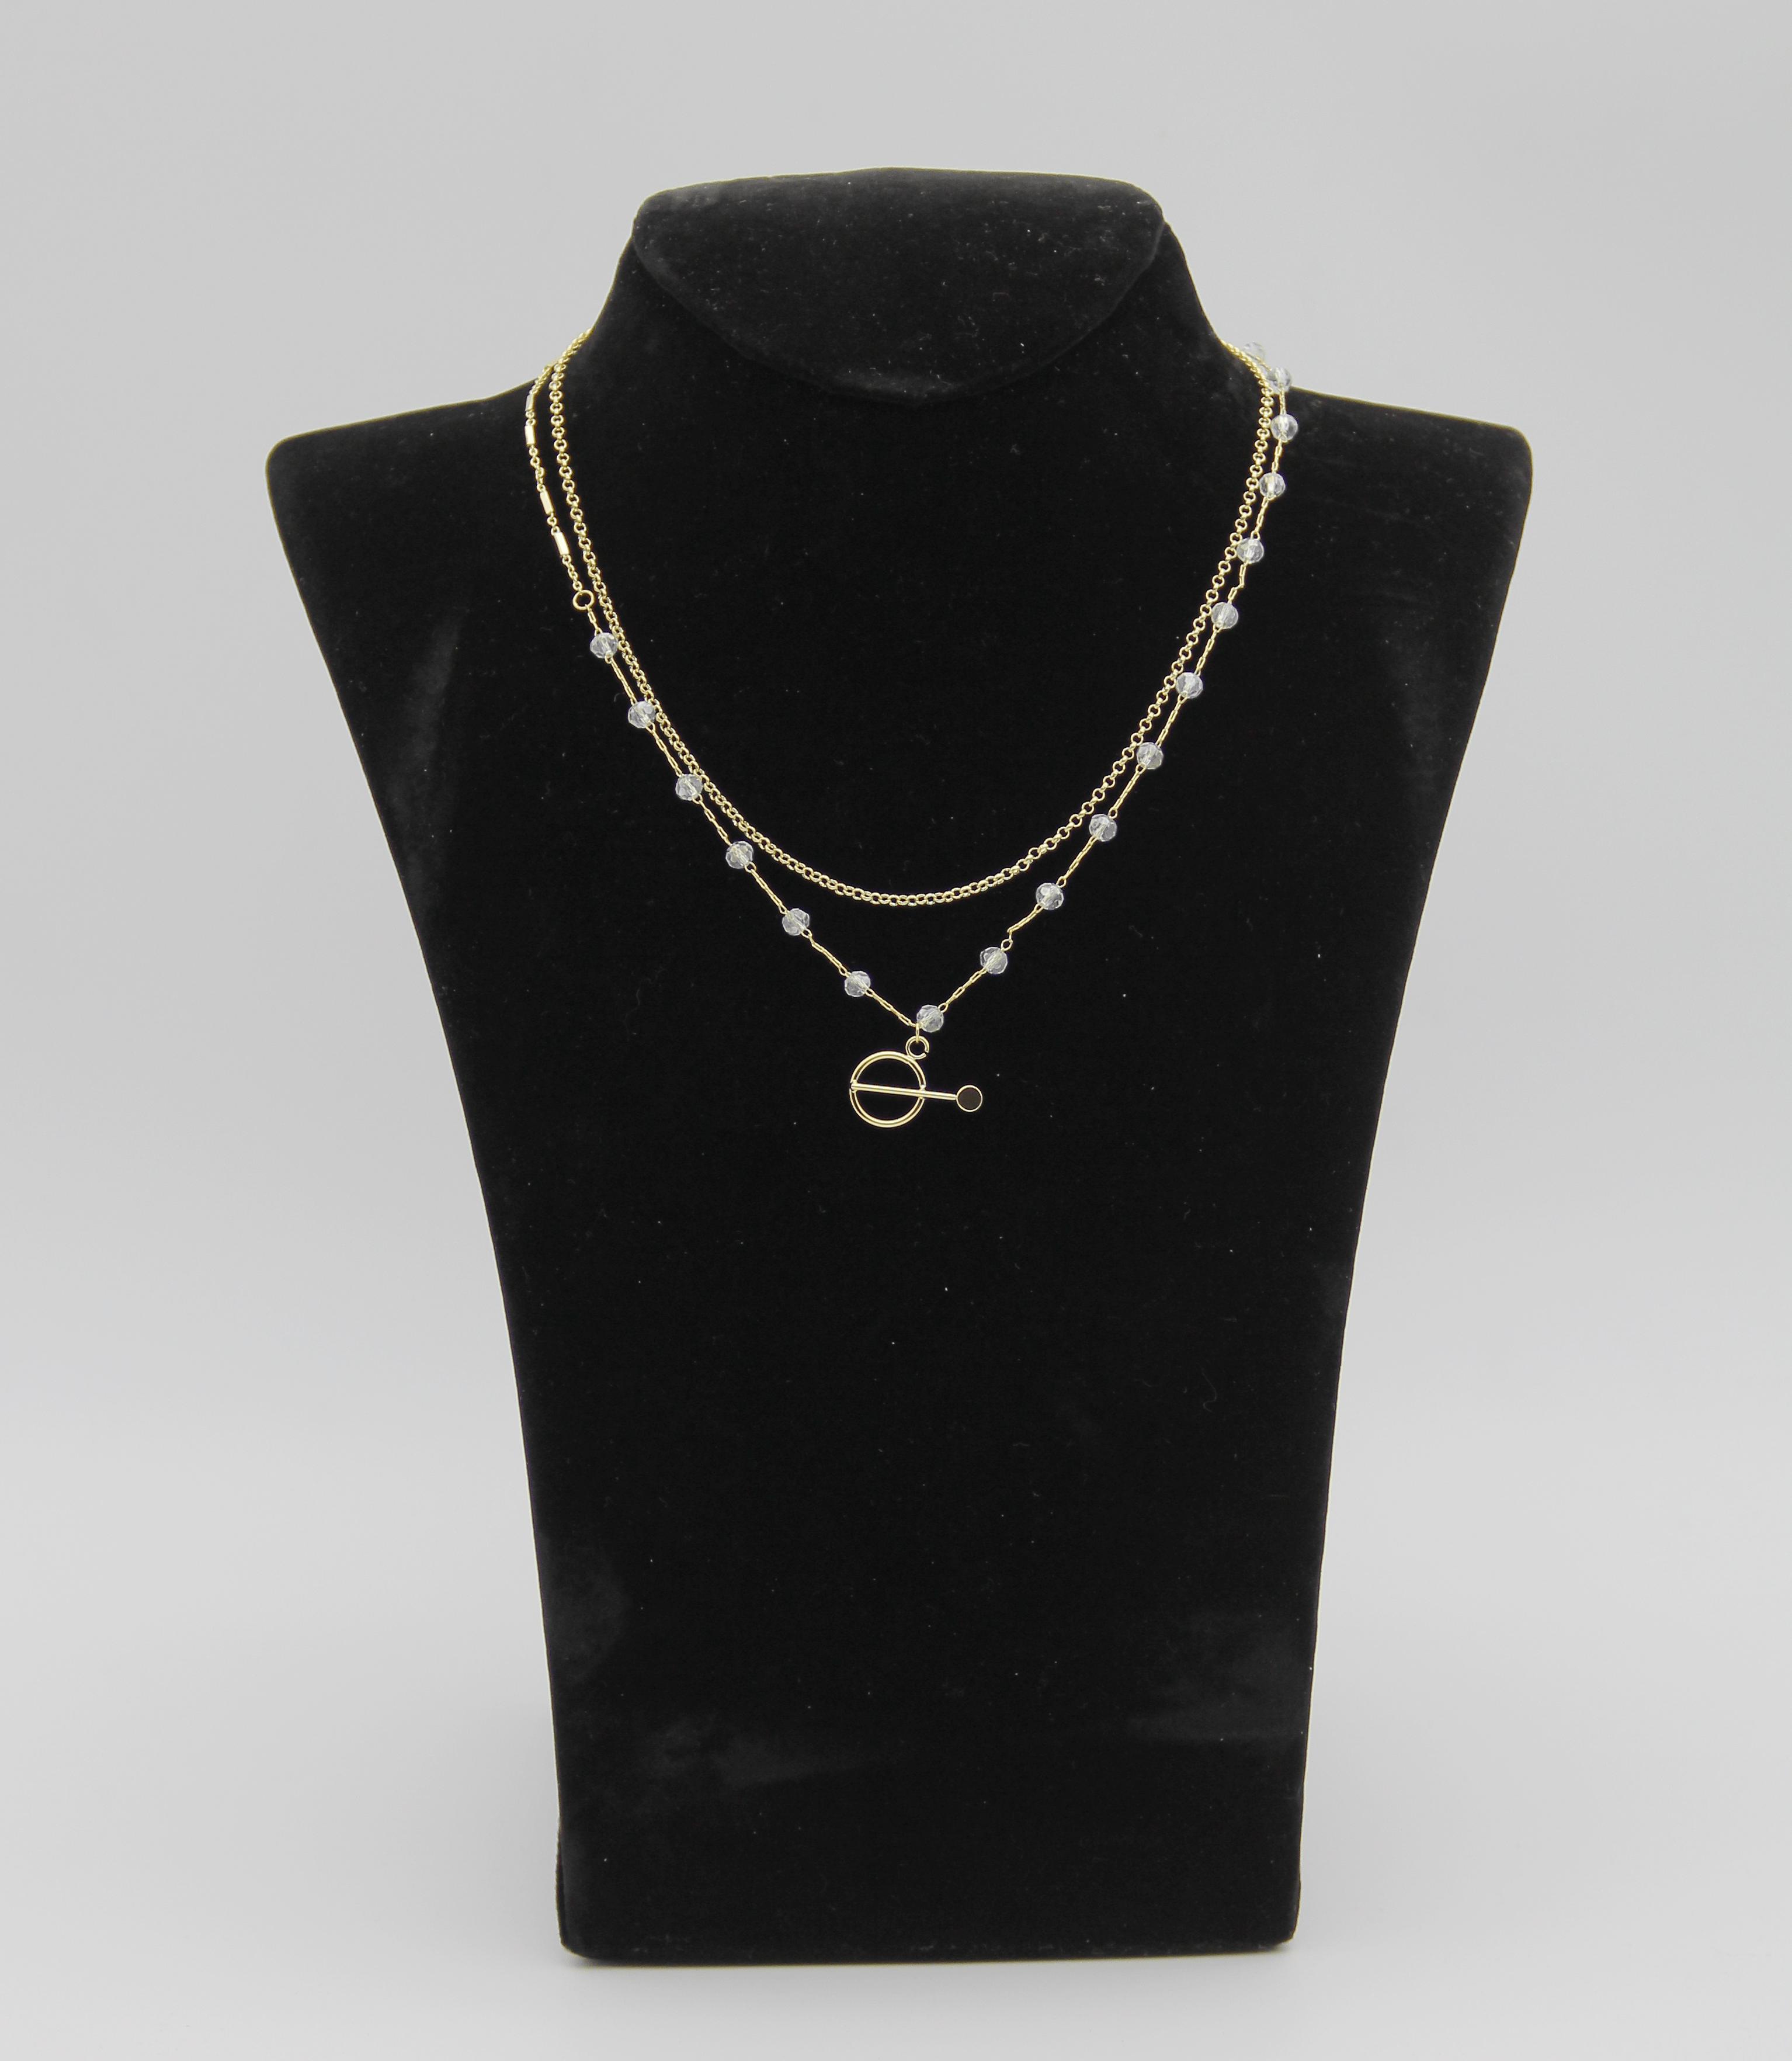 Outlet W&B Female Necklaces Long - Arrow Pendant - Necklace